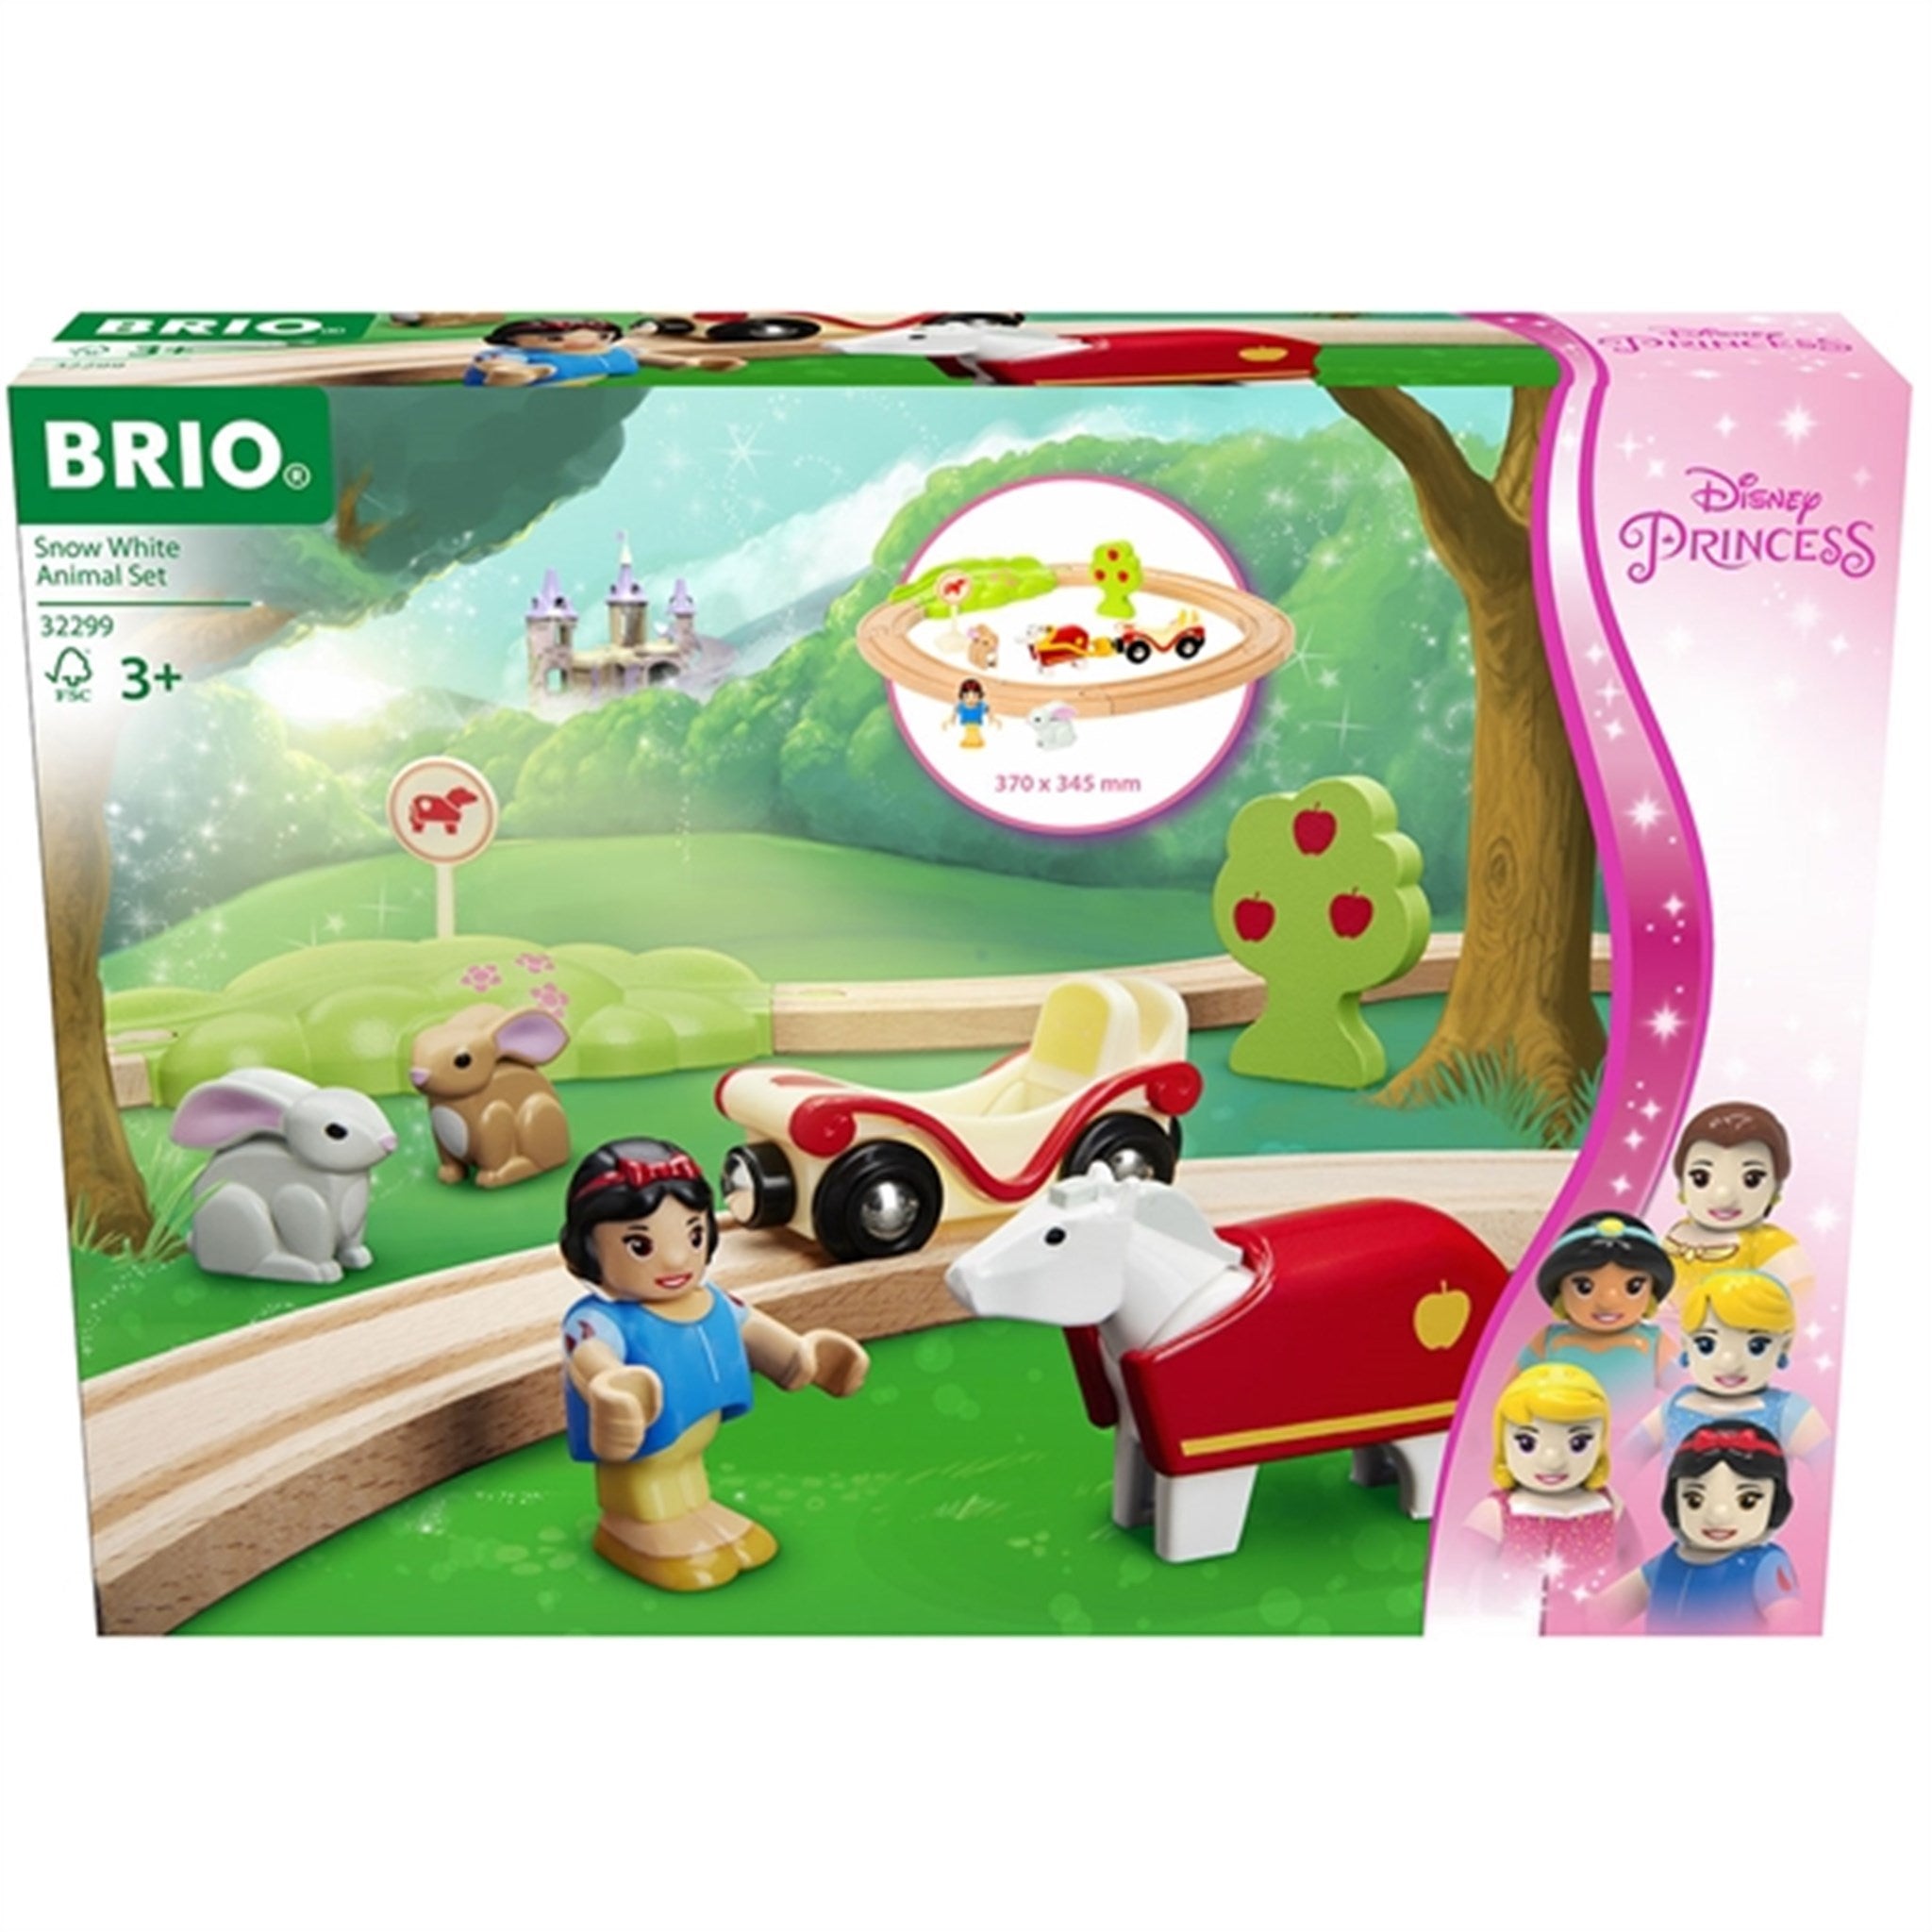 BRIO® Disney Princess Snow White Animal Set 2